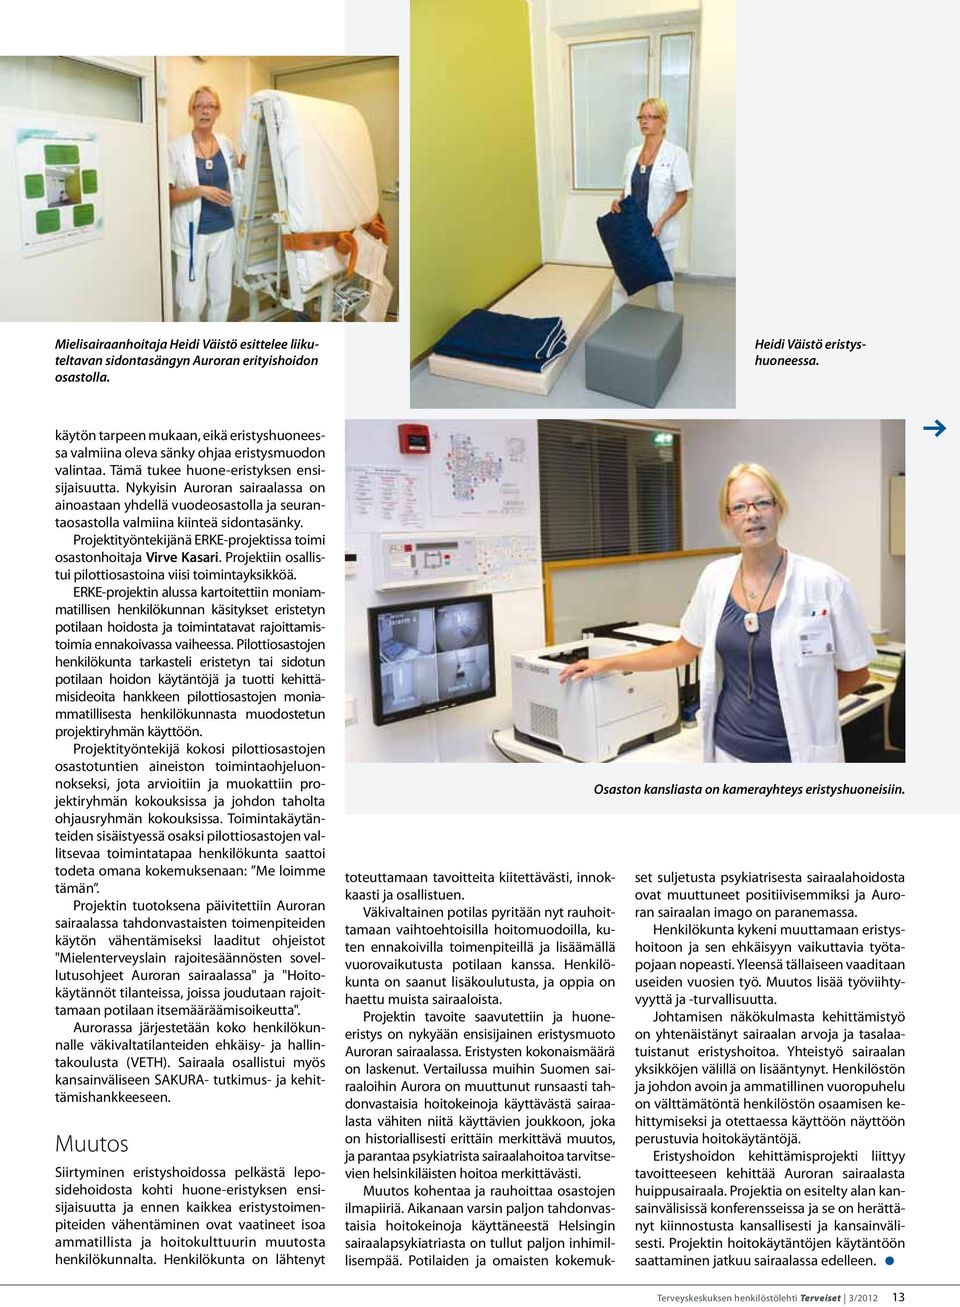 Nykyisin Auroran sairaalassa on ainoastaan yhdellä vuodeosastolla ja seurantaosastolla valmiina kiinteä sidontasänky. Projektityöntekijänä ERKE-projektissa toimi osastonhoitaja Virve Kasari.